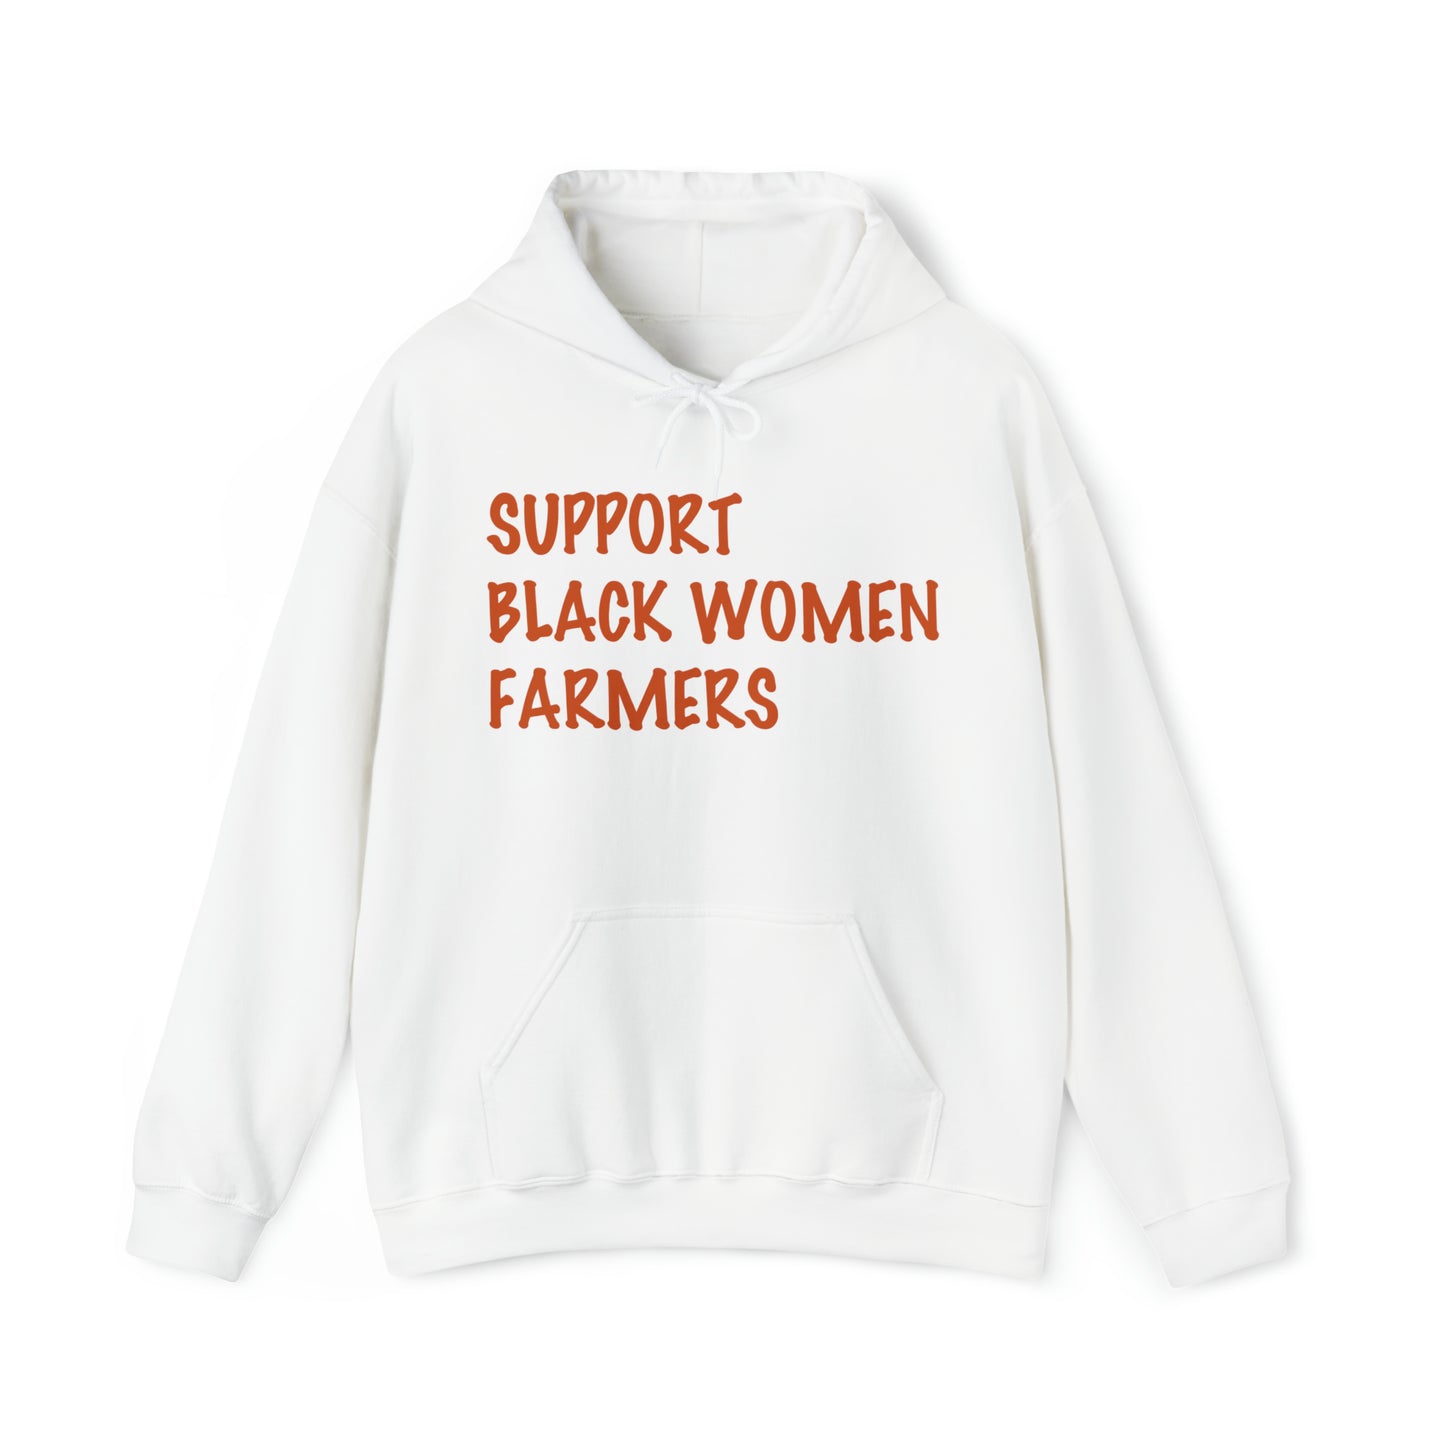 Support Black Women Farmers